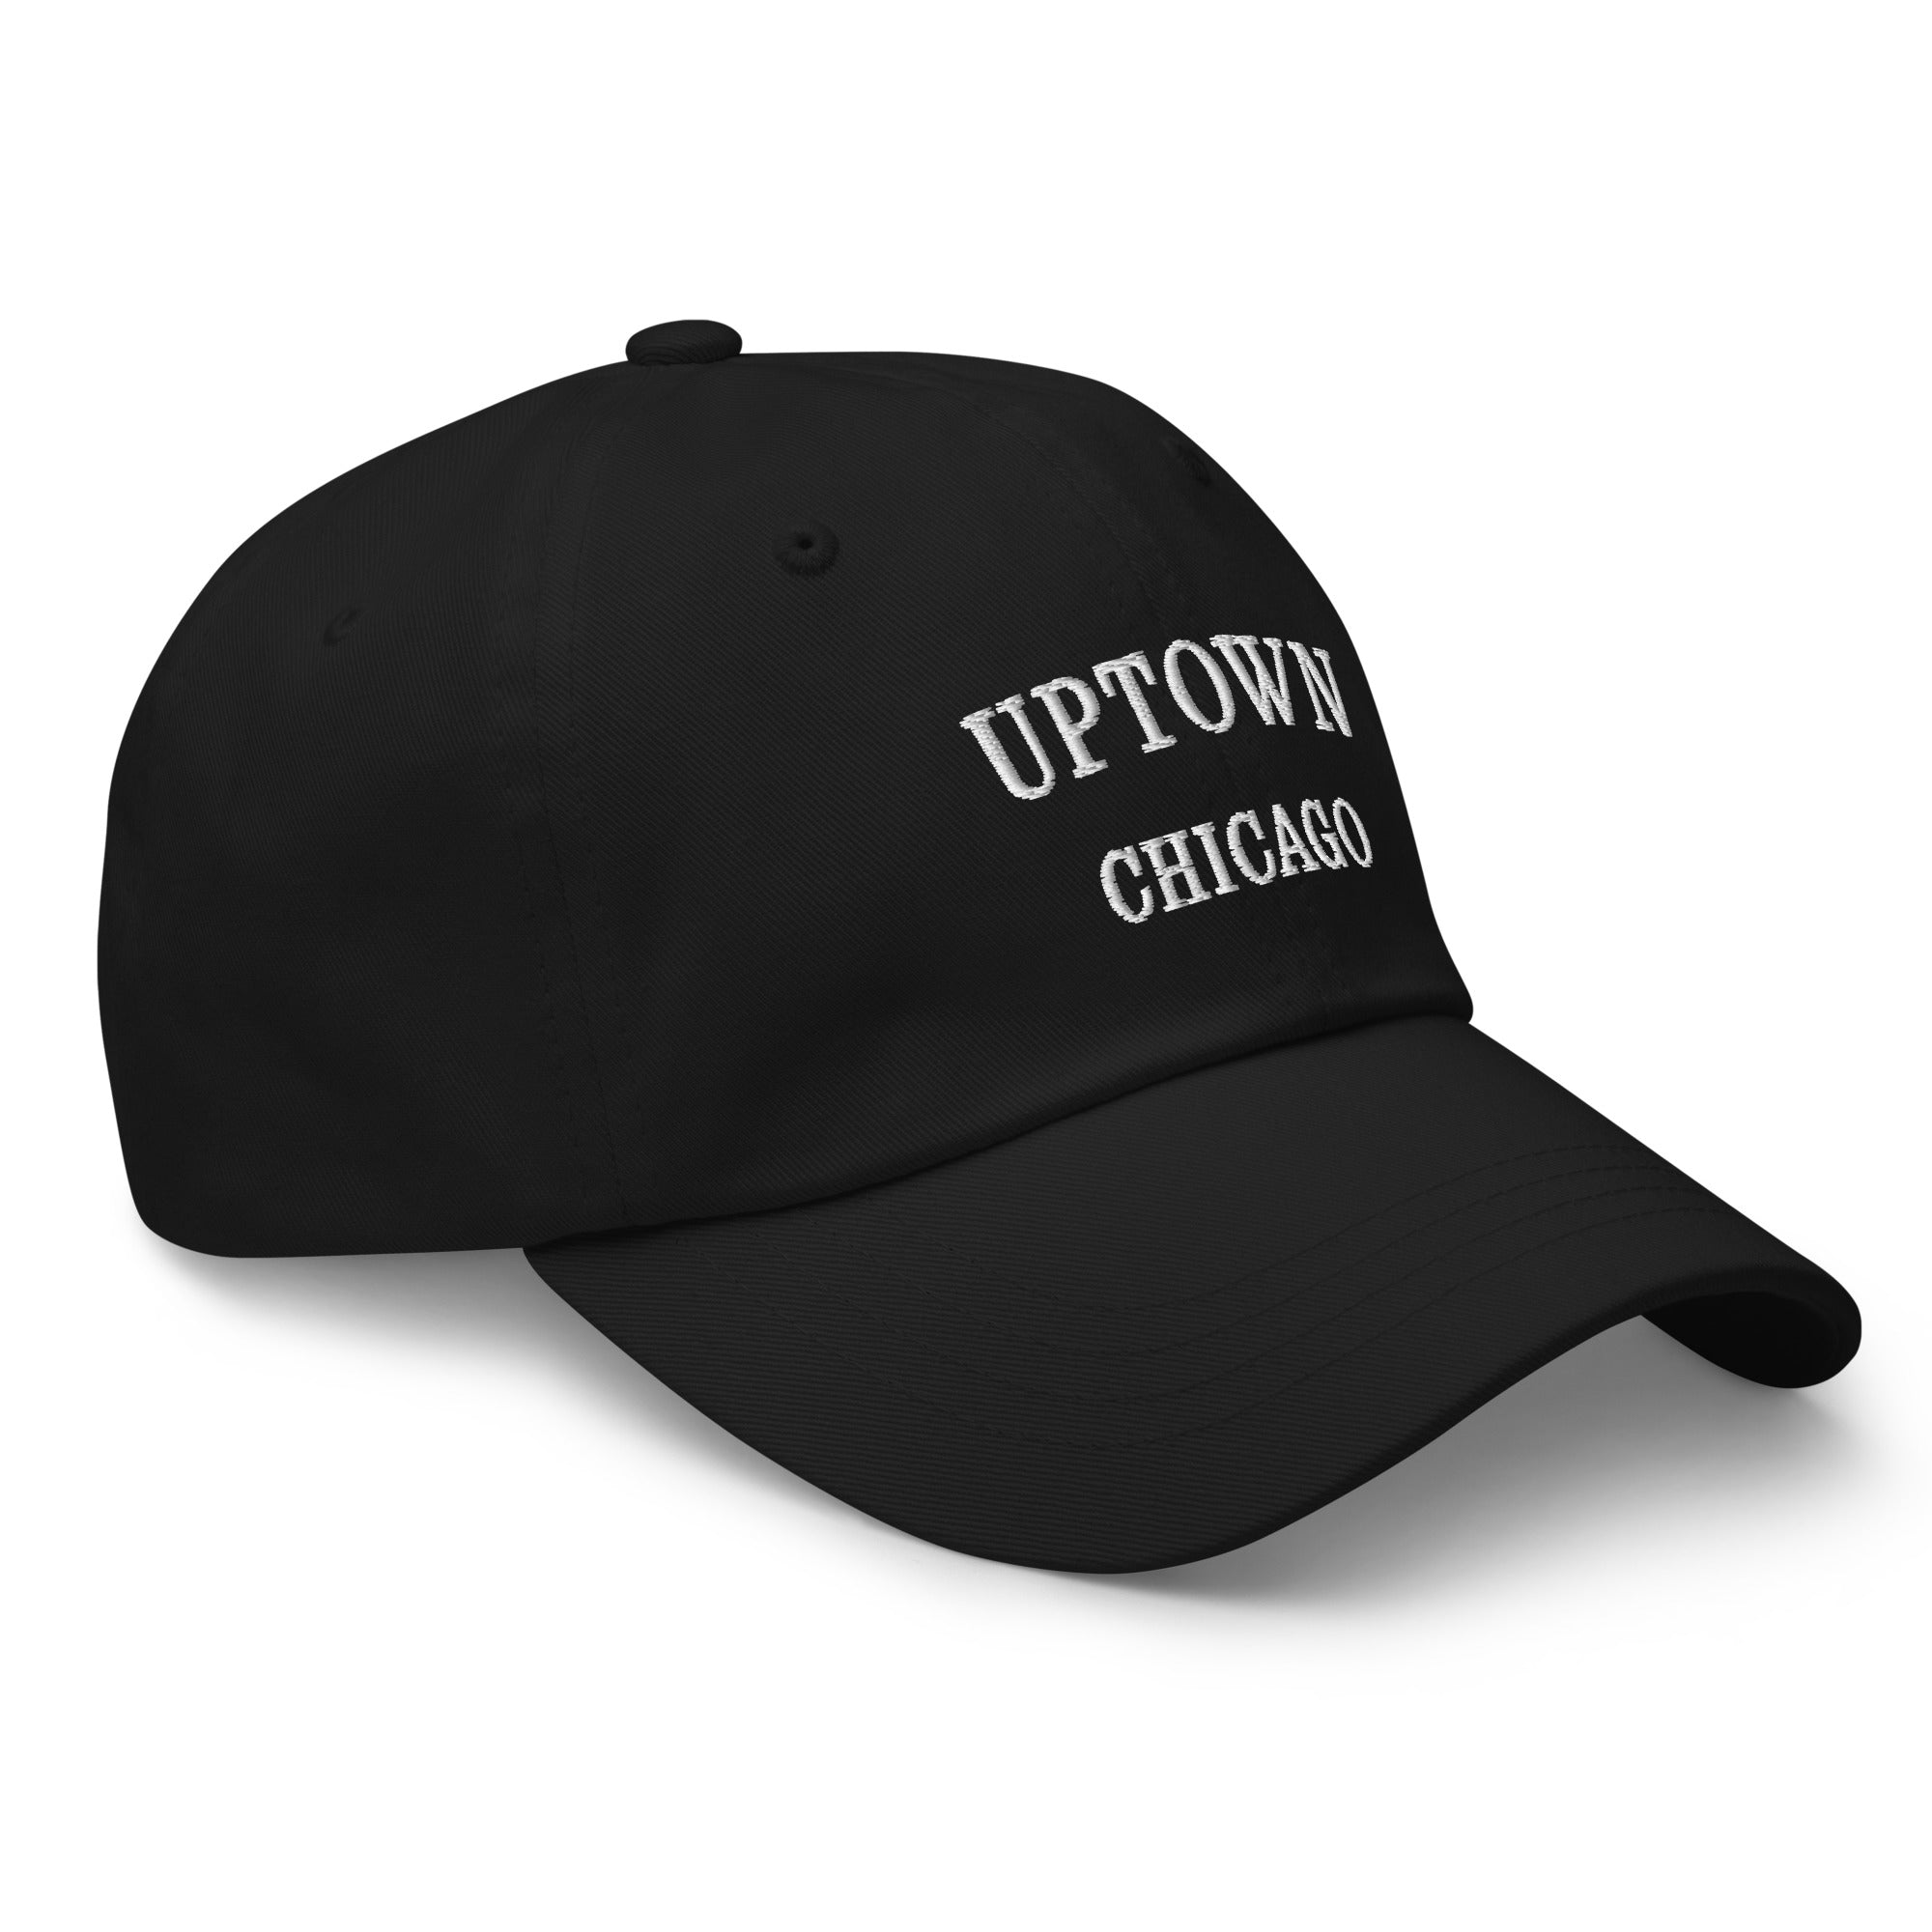 Uptown Chicago Dad Hat